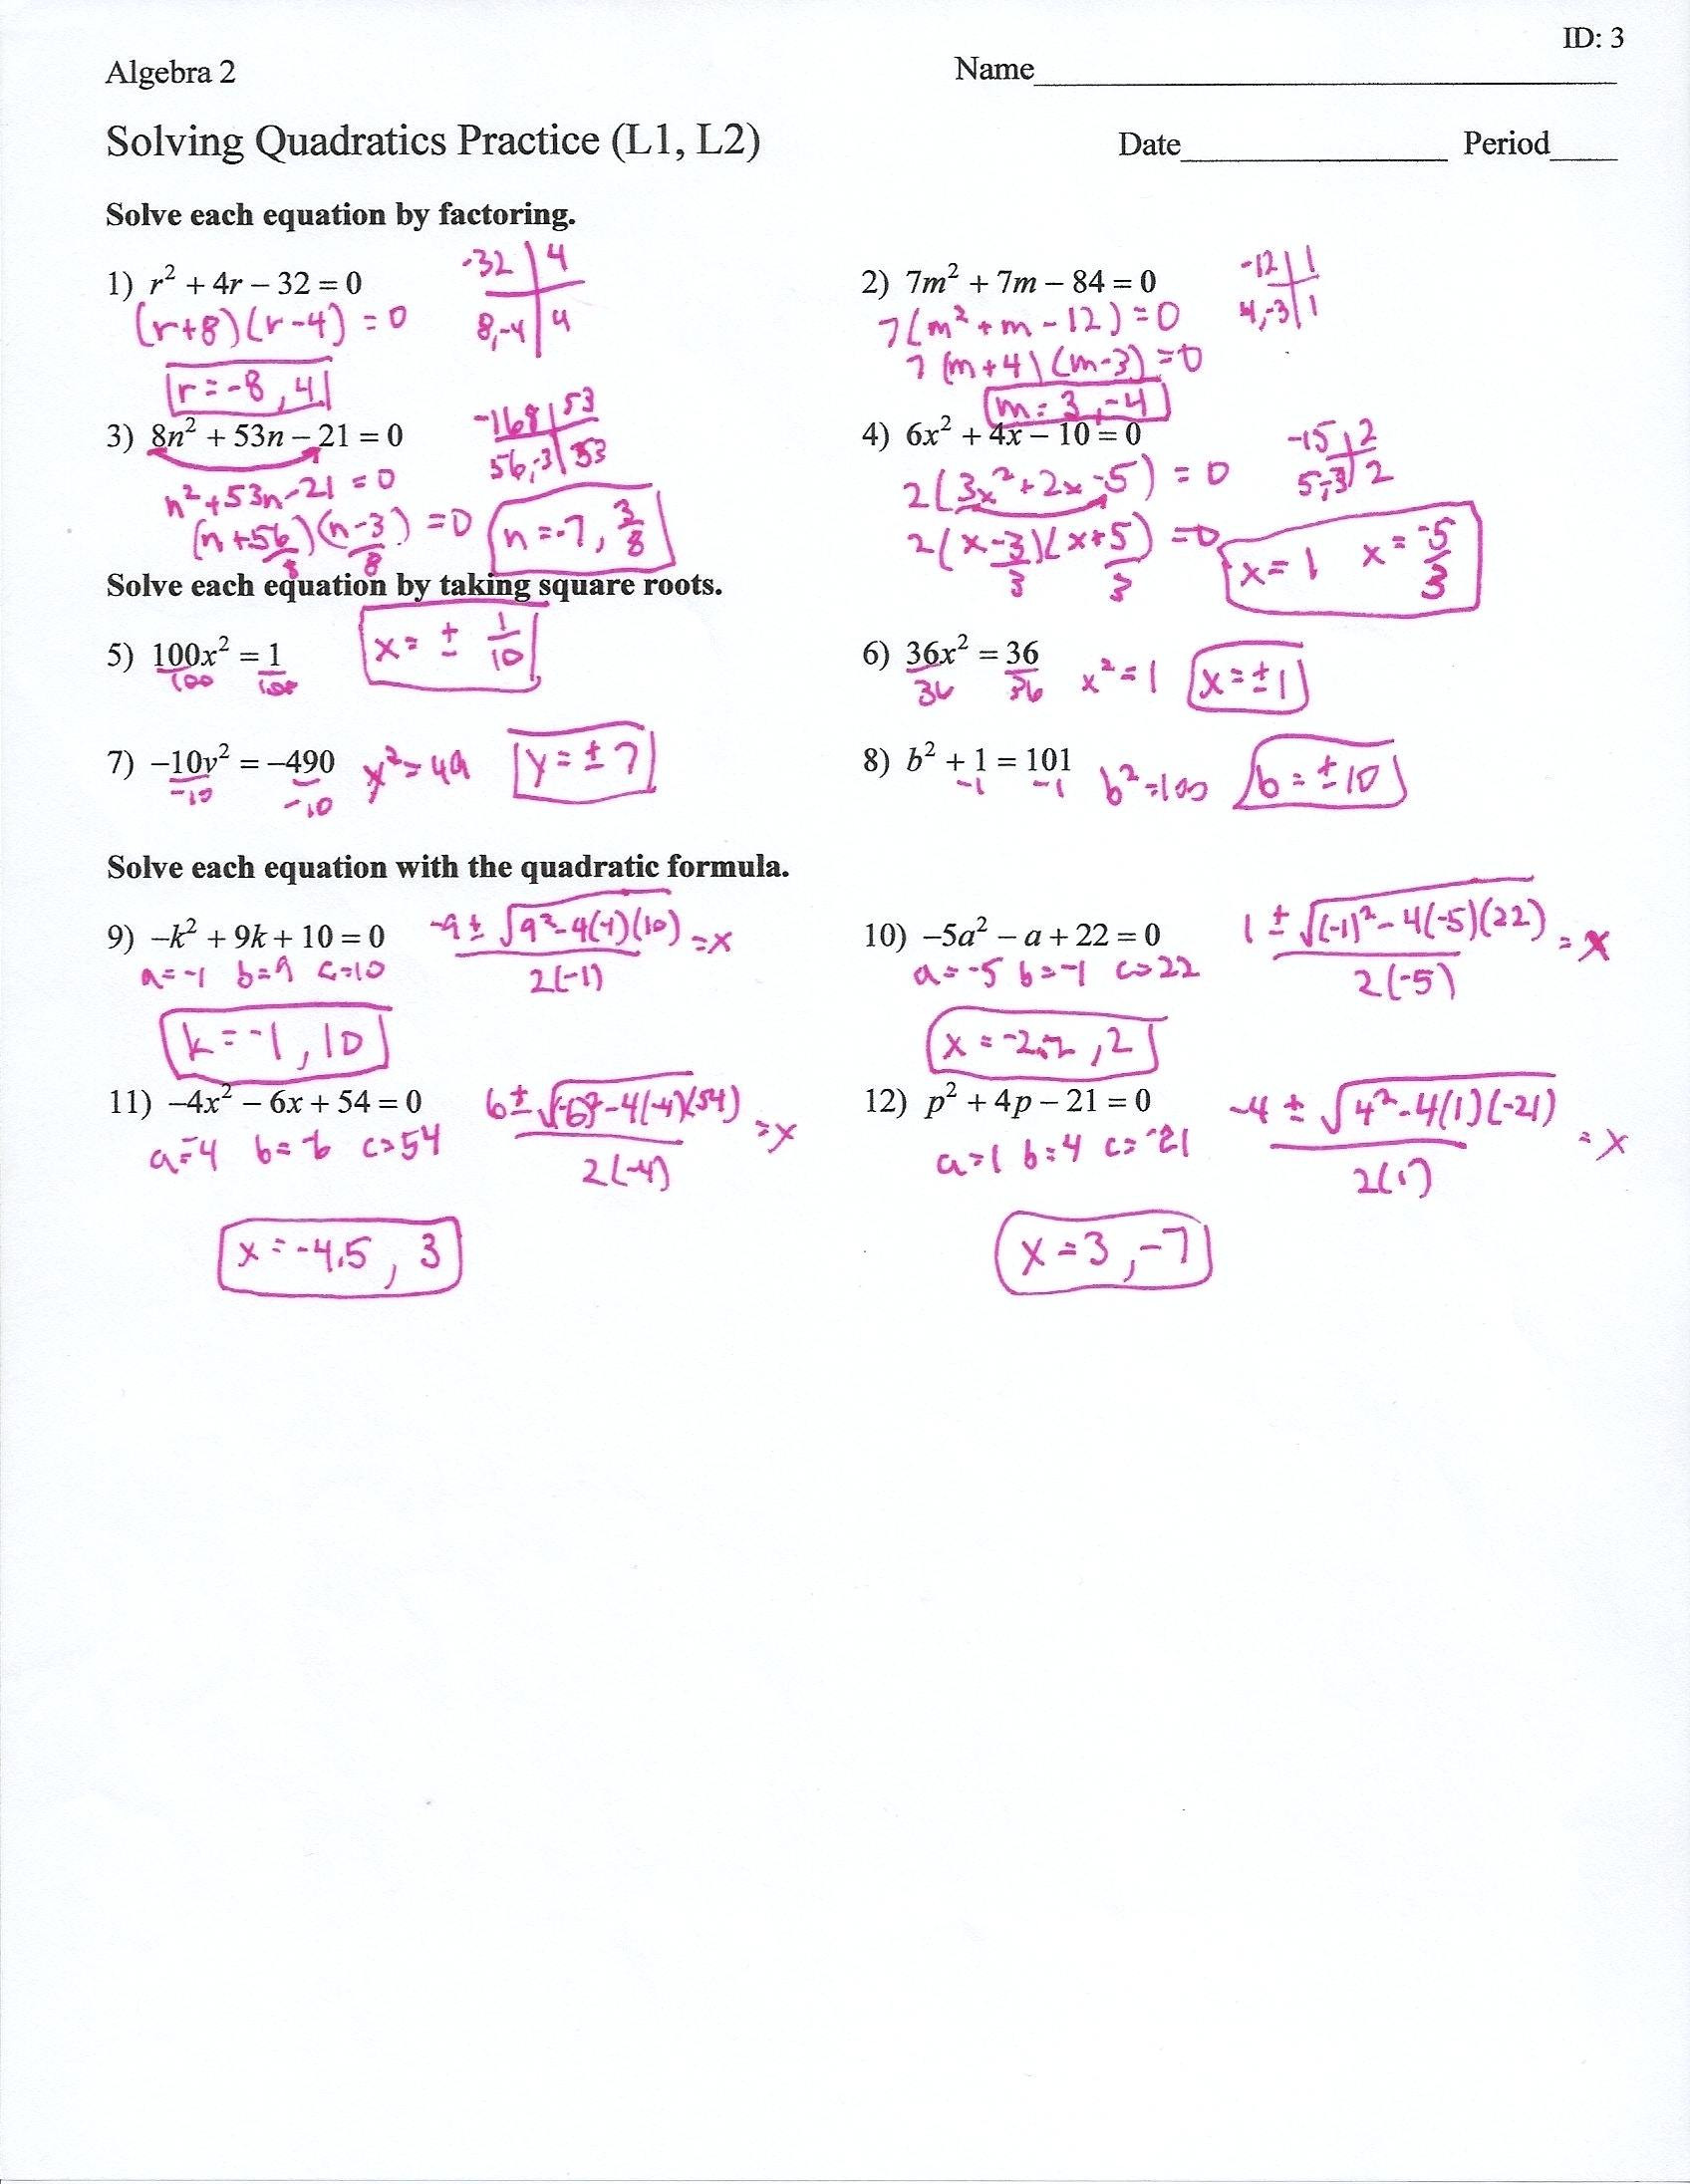 Factoring Quadratic Equations Worksheet solving Quadratic Equations by Factoring Worksheet Answers